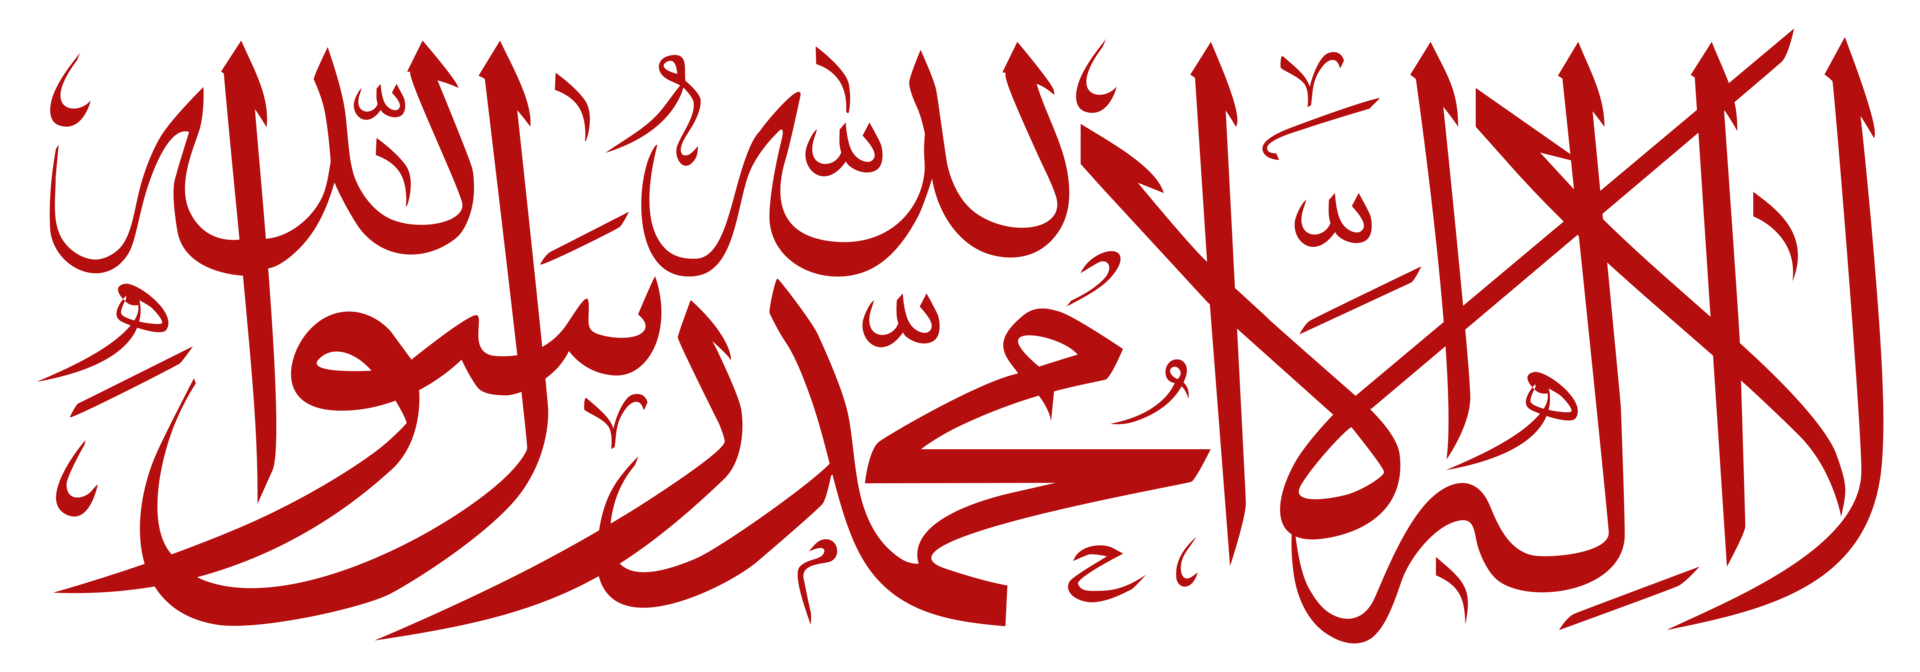 Traduction de là est non Dieu mais Allah, Mohammed est le Messager de Allah, islamique arabe calligraphie. format png